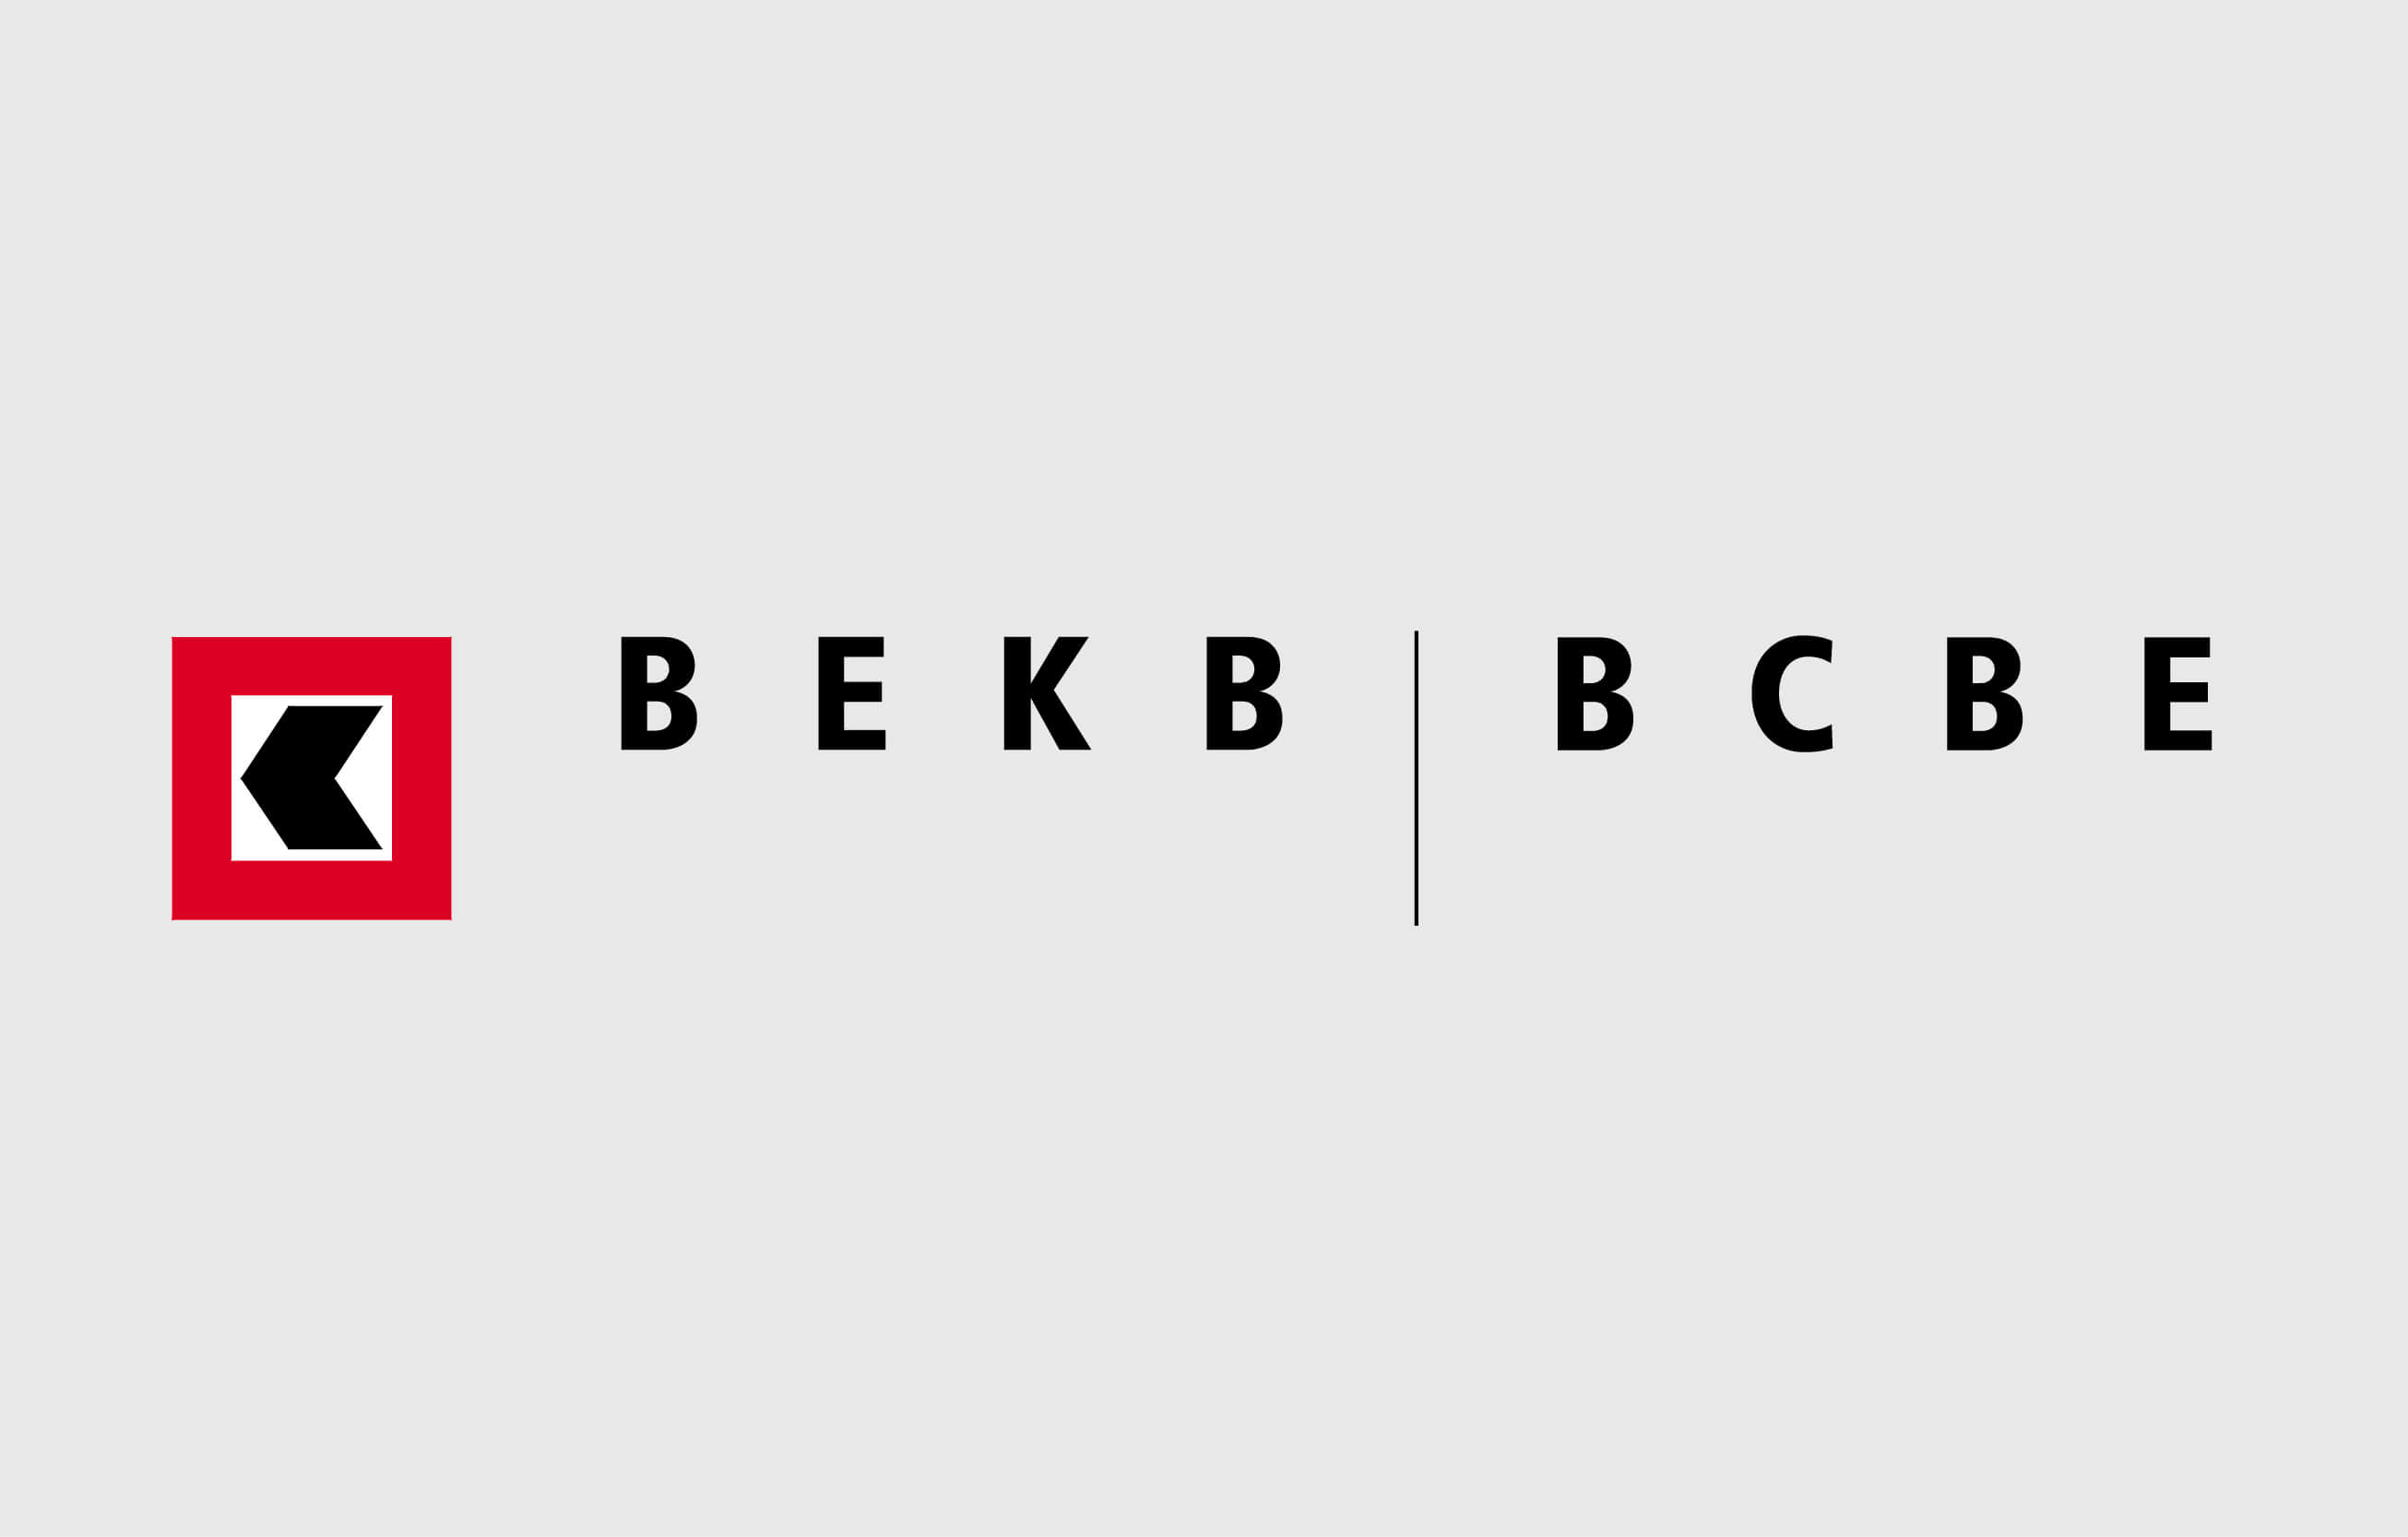 Berner Kantonalbank BEKB design by consign | Agentur für Branding und Kommunikation